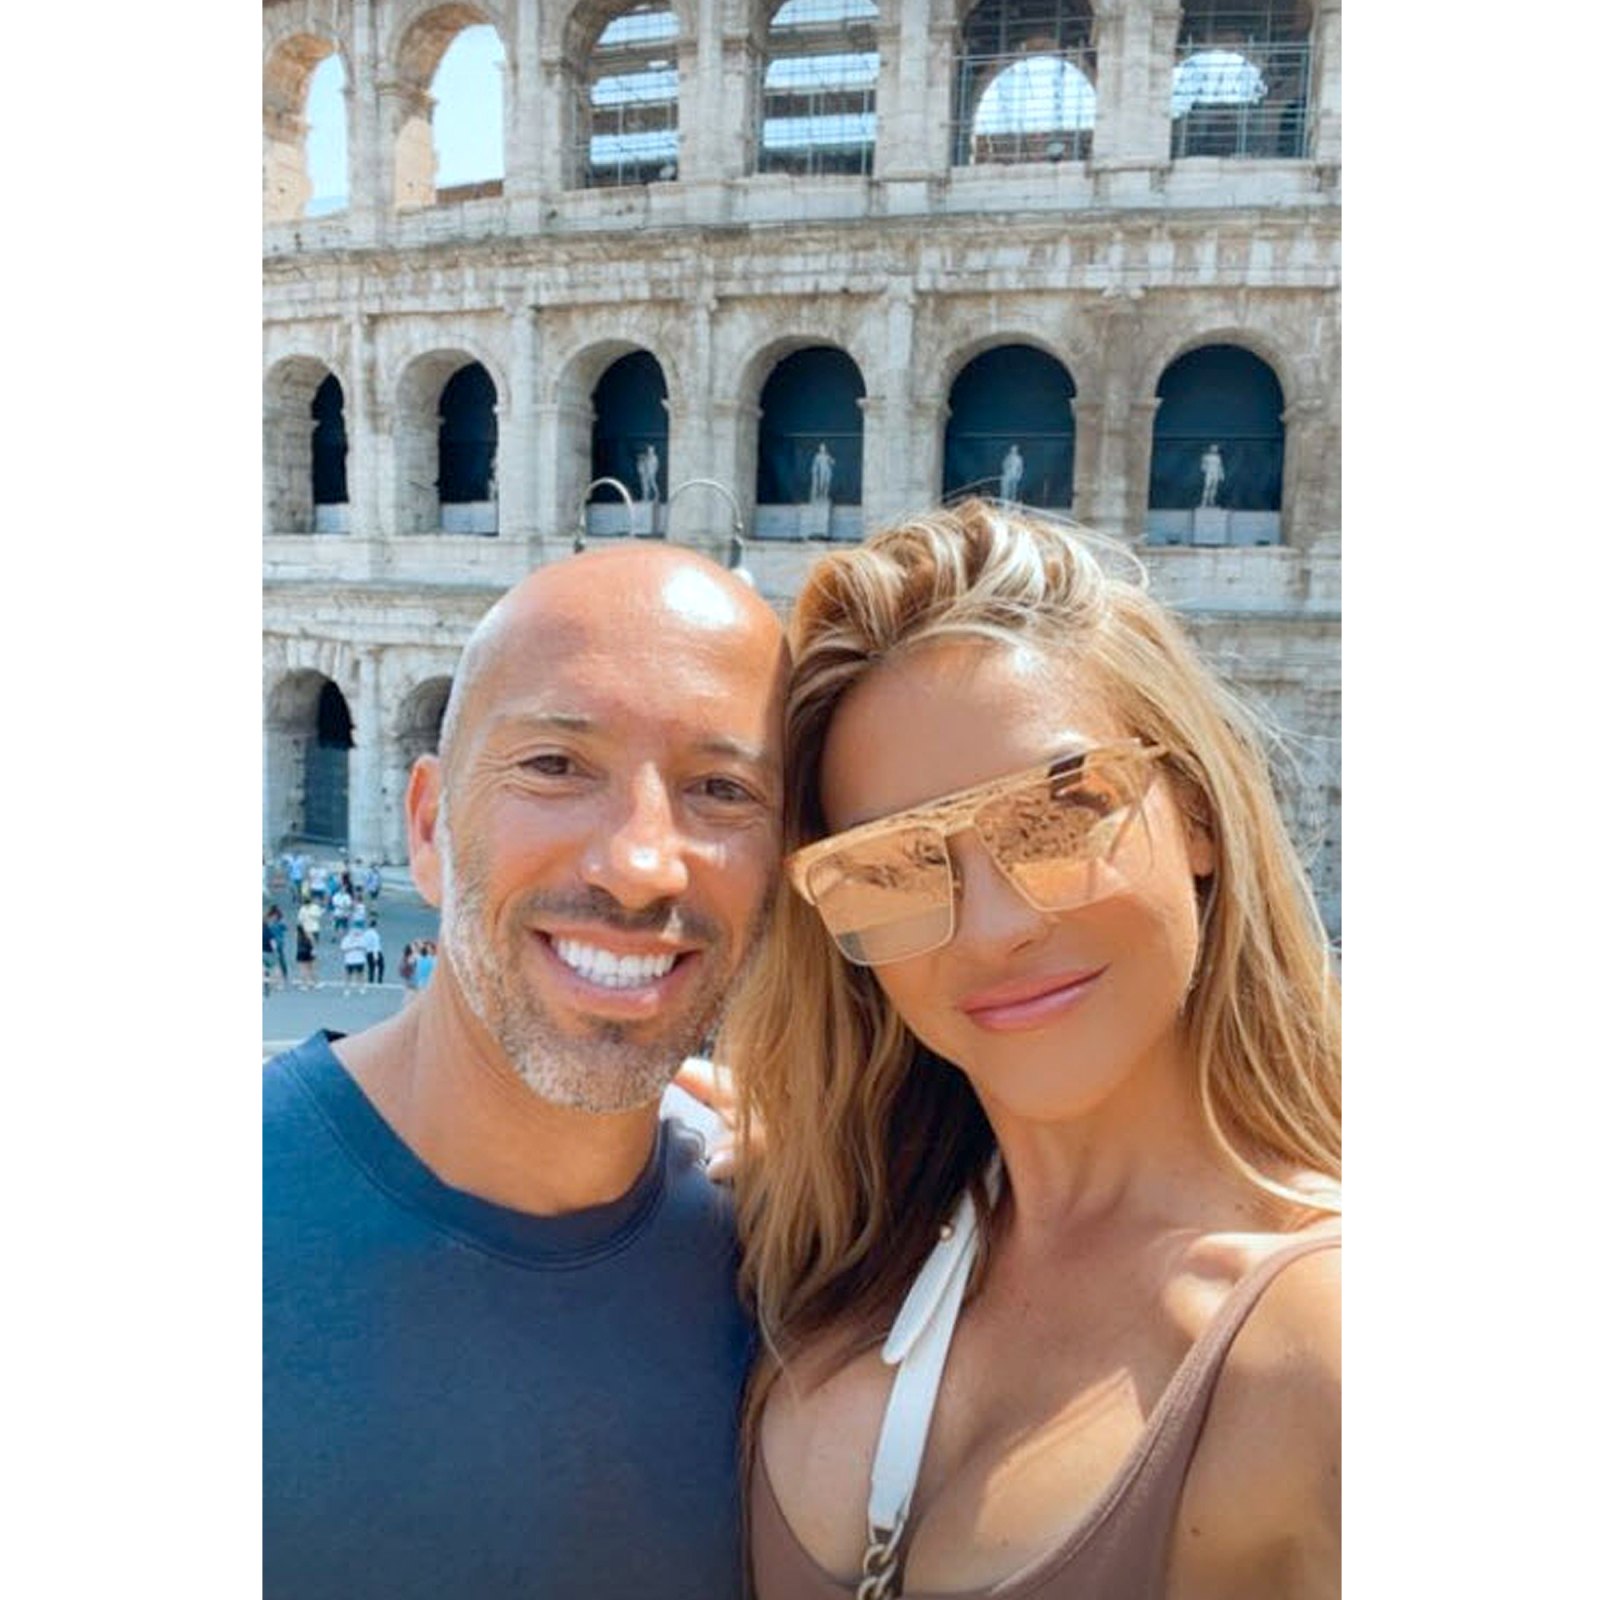 Smiling Selfie Selling Sunset Chrishell Stause Jason Oppenheim Visit Colosseum